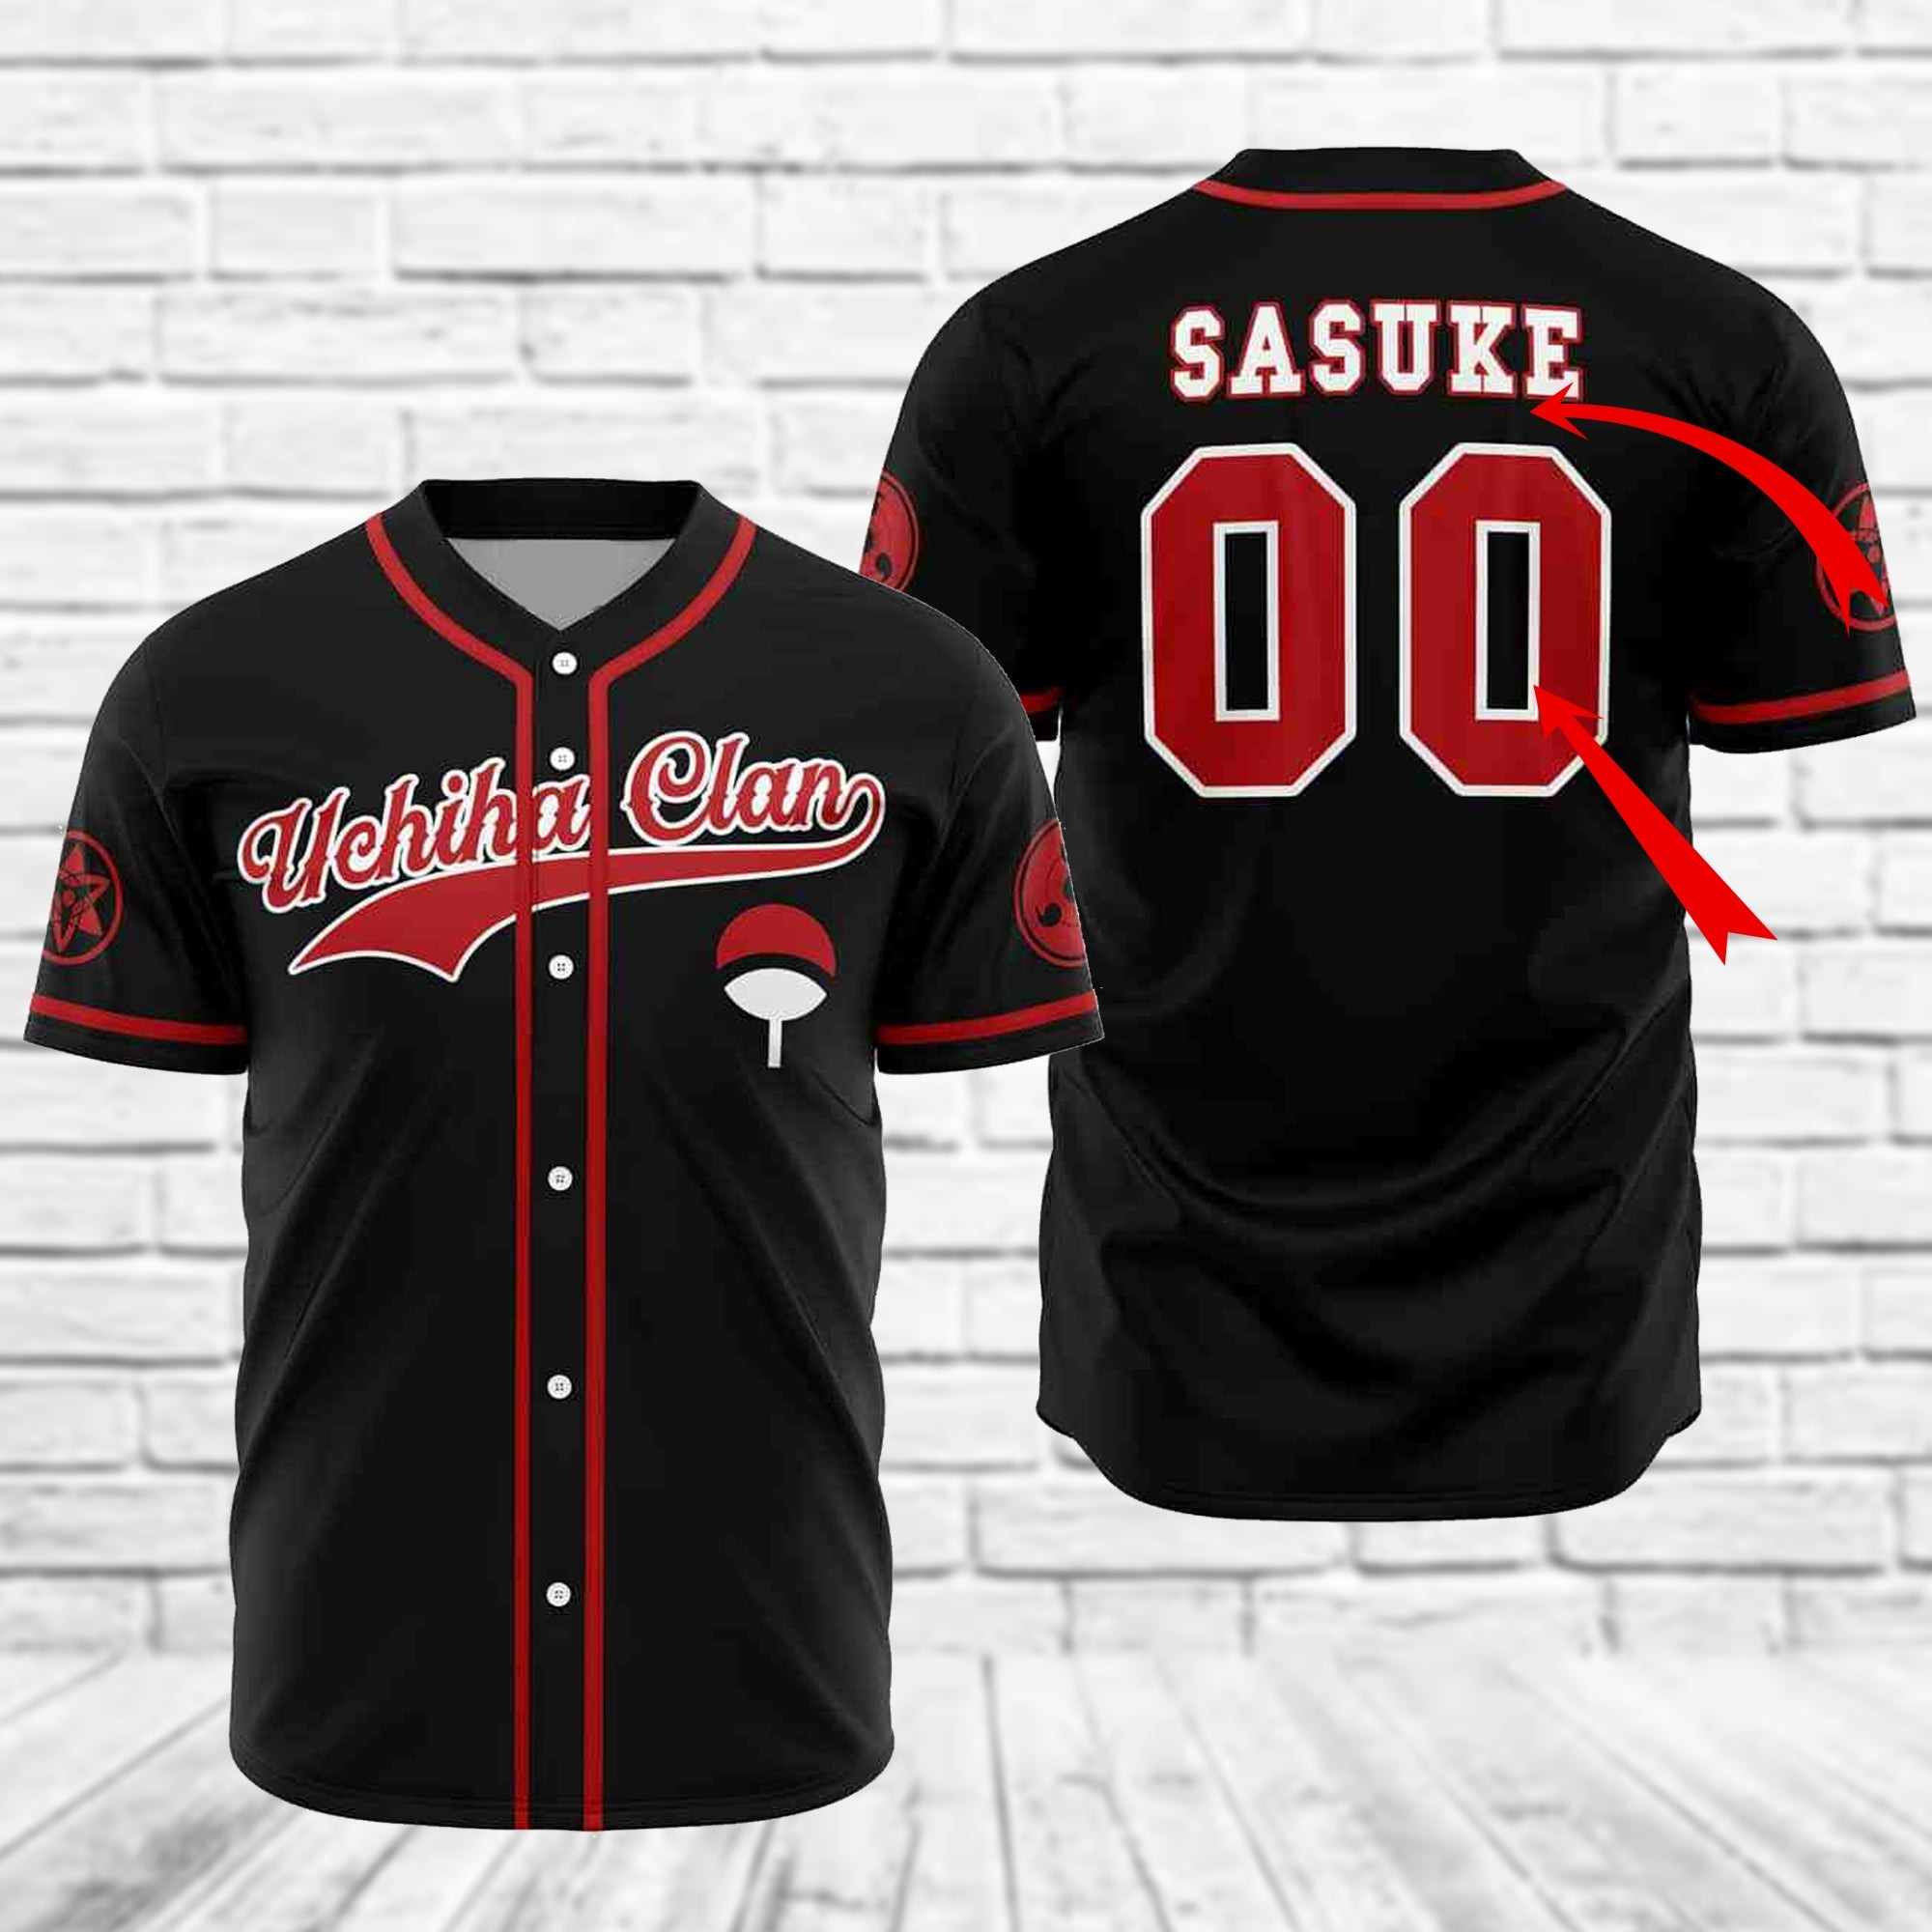 Personalized Naruto Sasuke Uchiha Clan Baseball Jersey, Unisex Baseball Jersey for Men Women